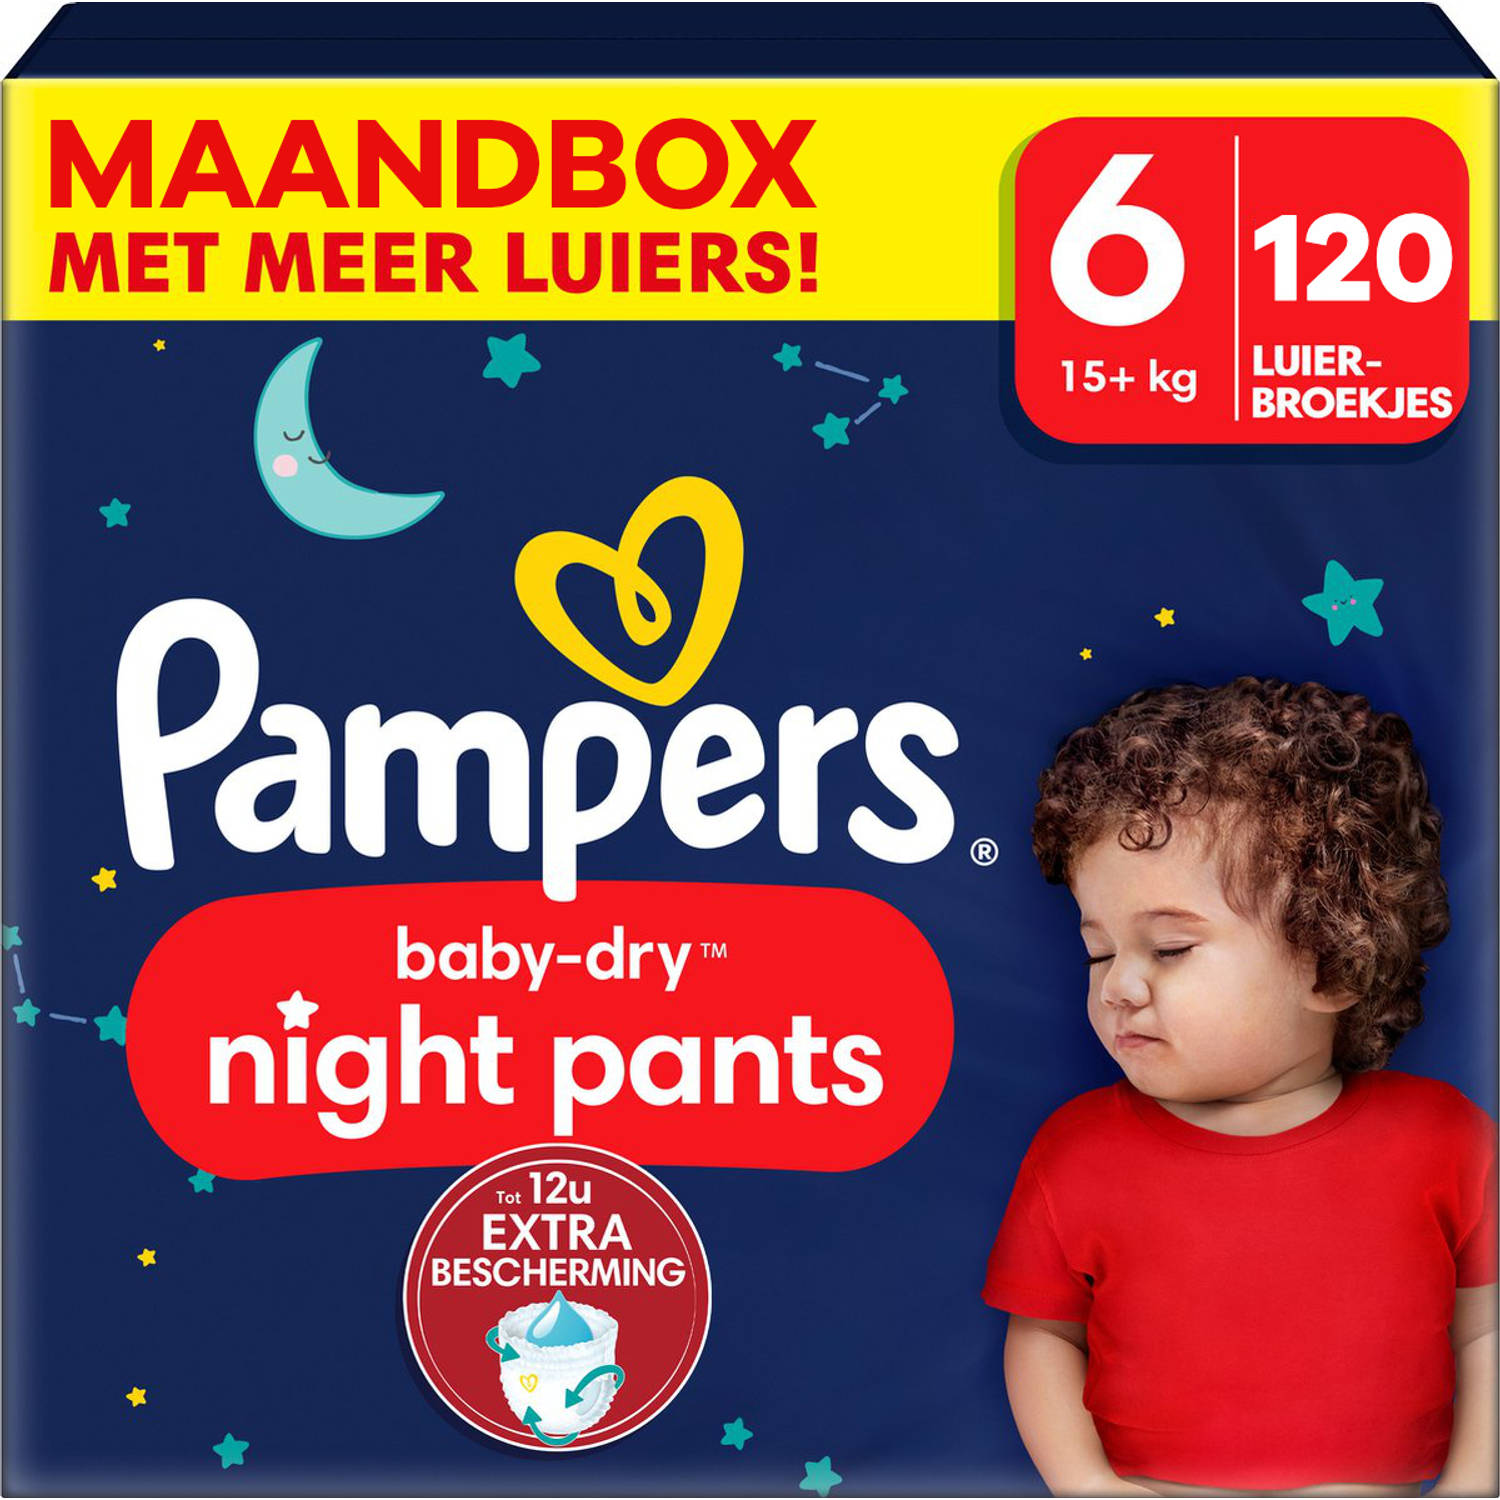 Pampers - Baby Dry Night Pants - Maat 6 - Maandbox - 120 stuks - 15+ KG